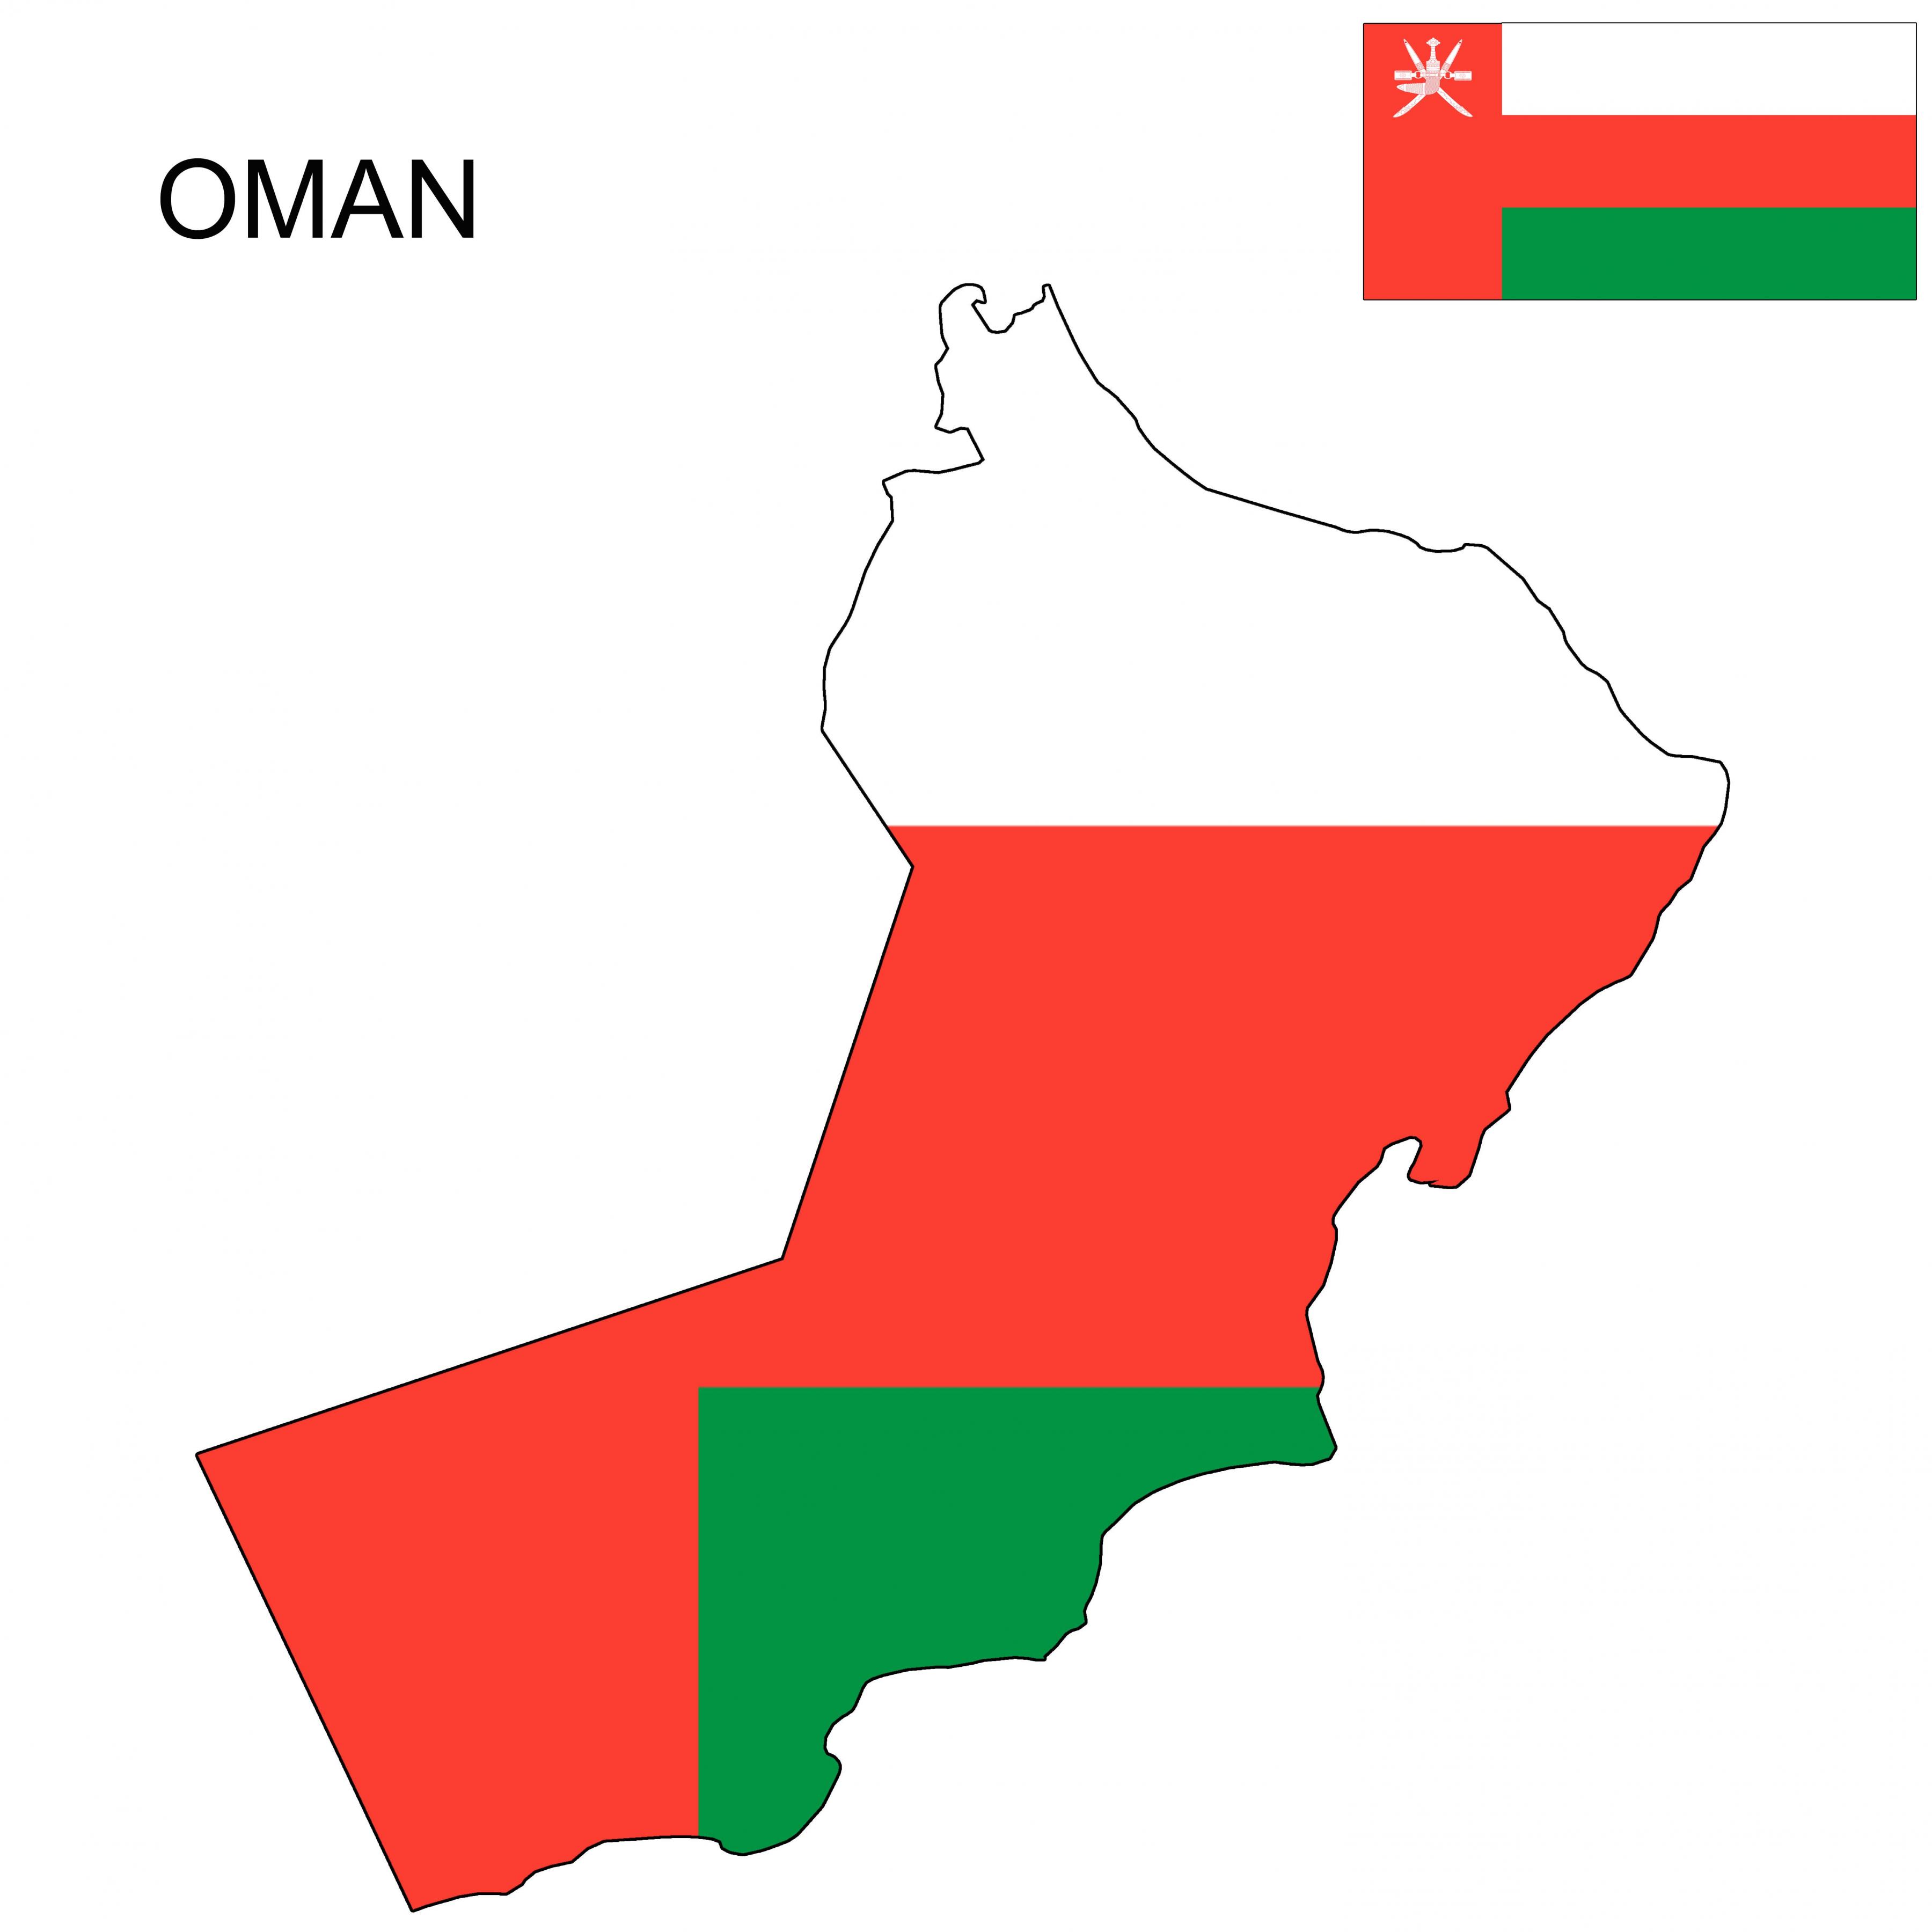 Oman cờ bản đồ: Oman cờ bản đồ cũng đặc biệt thể hiện sự yêu quý với đất nước và những cảm hứng về sự thống nhất và thiên nhiên đẹp mê hồn của đất nước này. Với thiết kế độc đáo này, Oman cờ bản đồ sẽ chắc chắn thu hút được sự quan tâm của những người yêu quý sự độc đáo của quốc gia này.